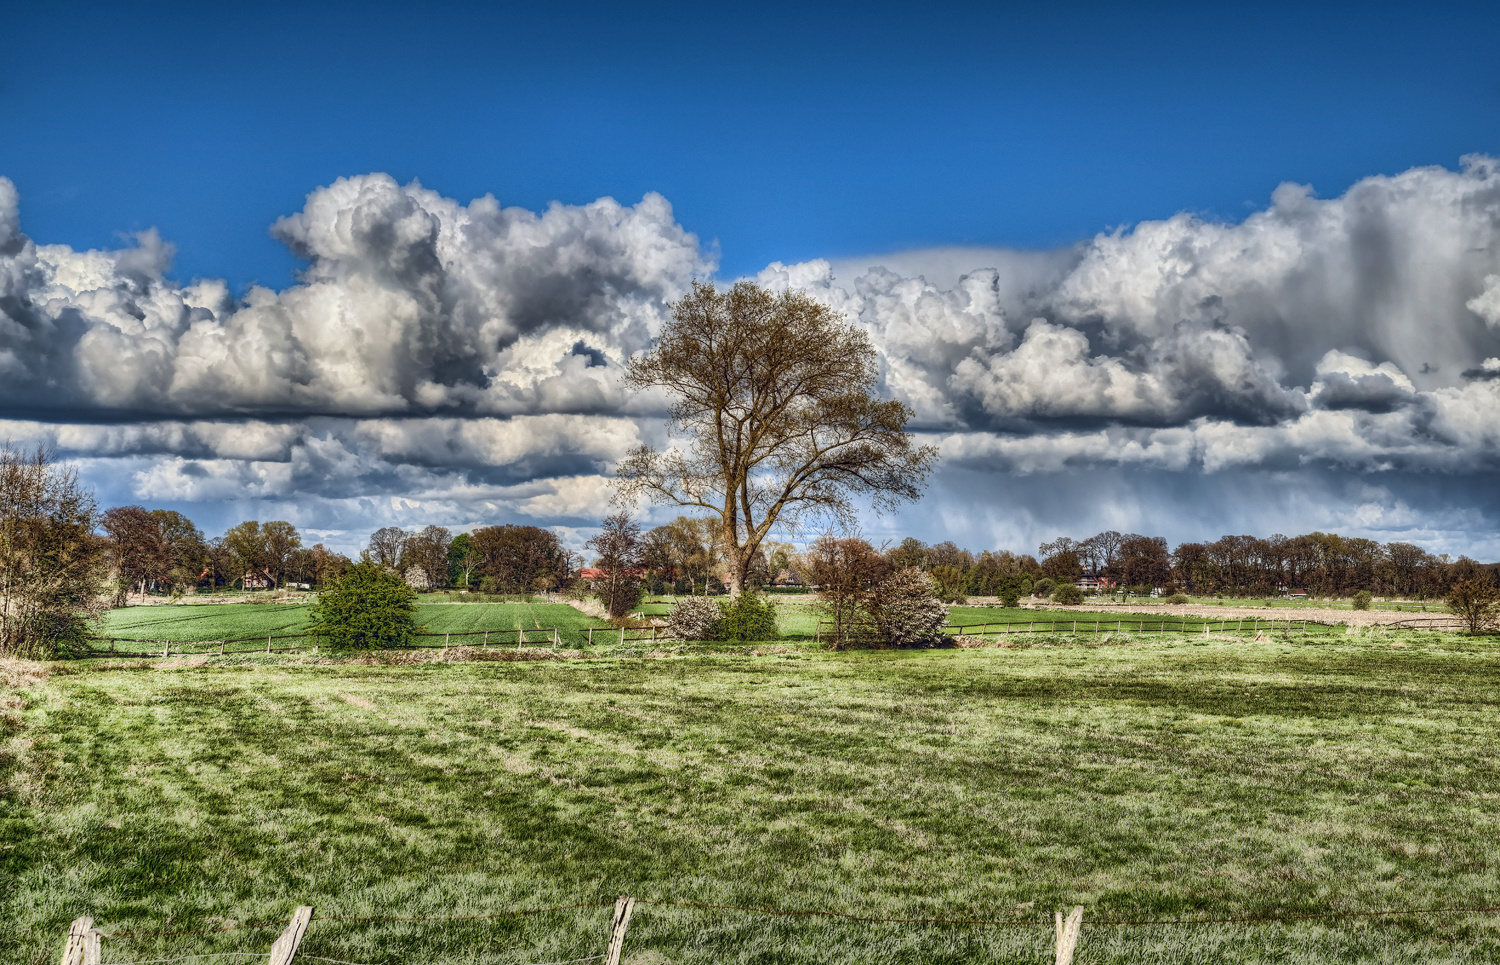 Aprilwolken und ein einsamer Baum